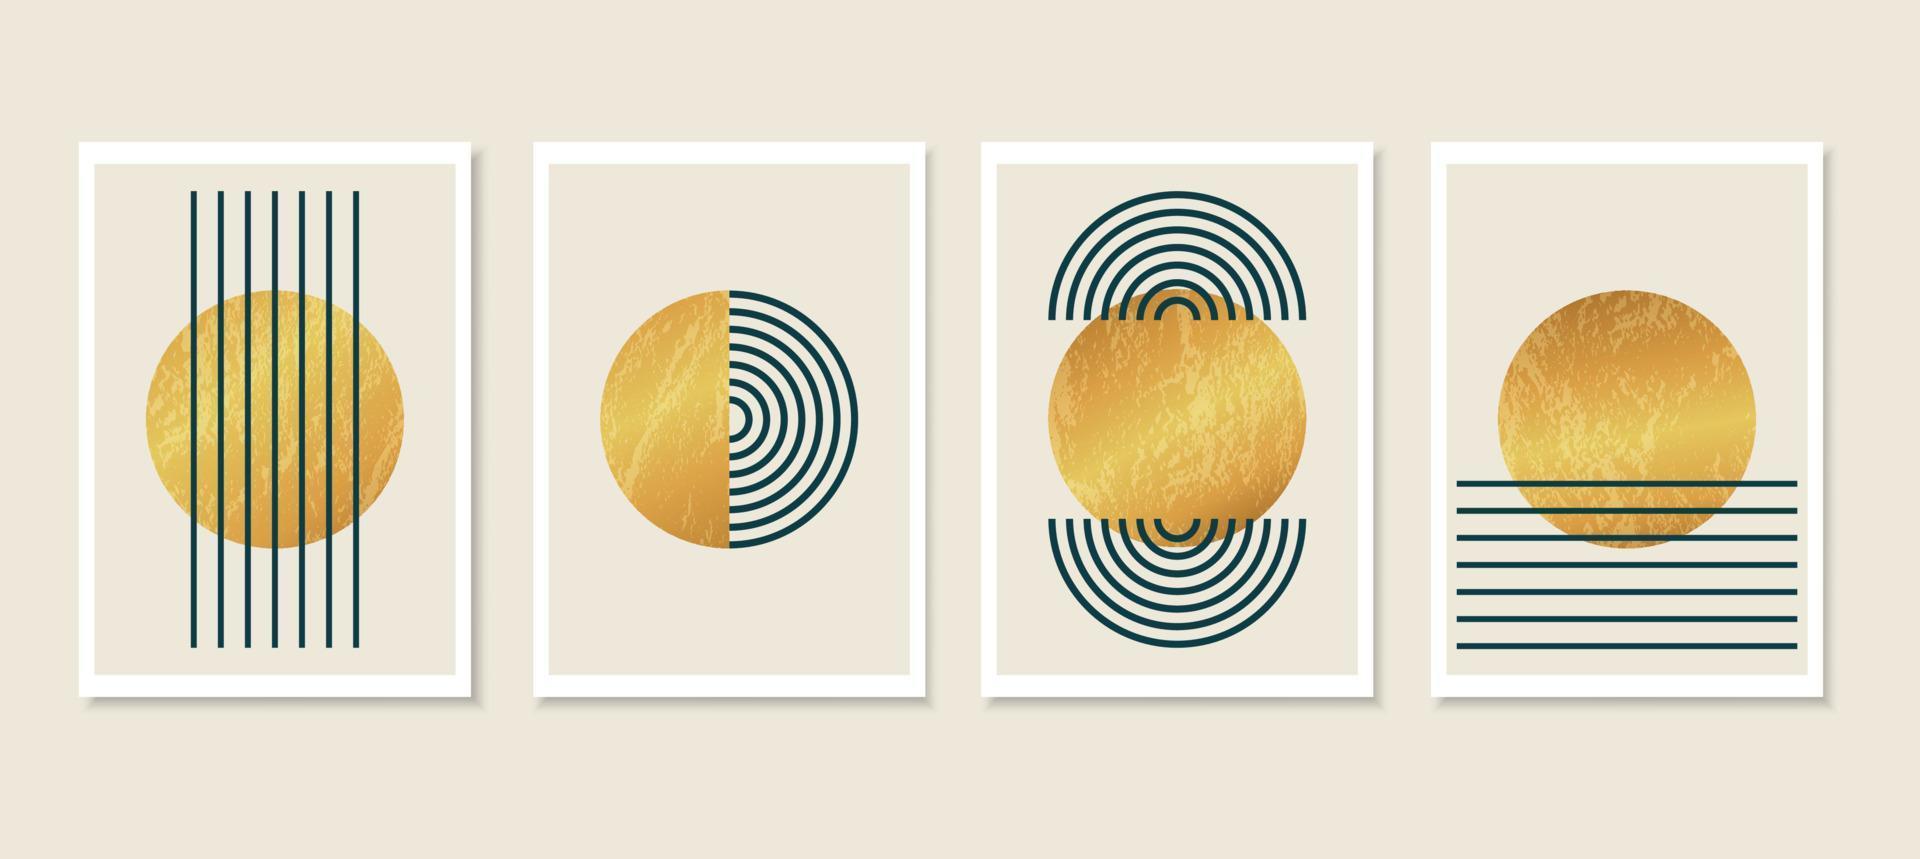 minimalistische abstracte kunst achtergrond met vormen. gouden geometrische cirkels. eenvoudige lijnstijl. esthetische vectorillustraties voor wanddecoratie, posters, covers, kaarten, uitnodigingen en branding. vector